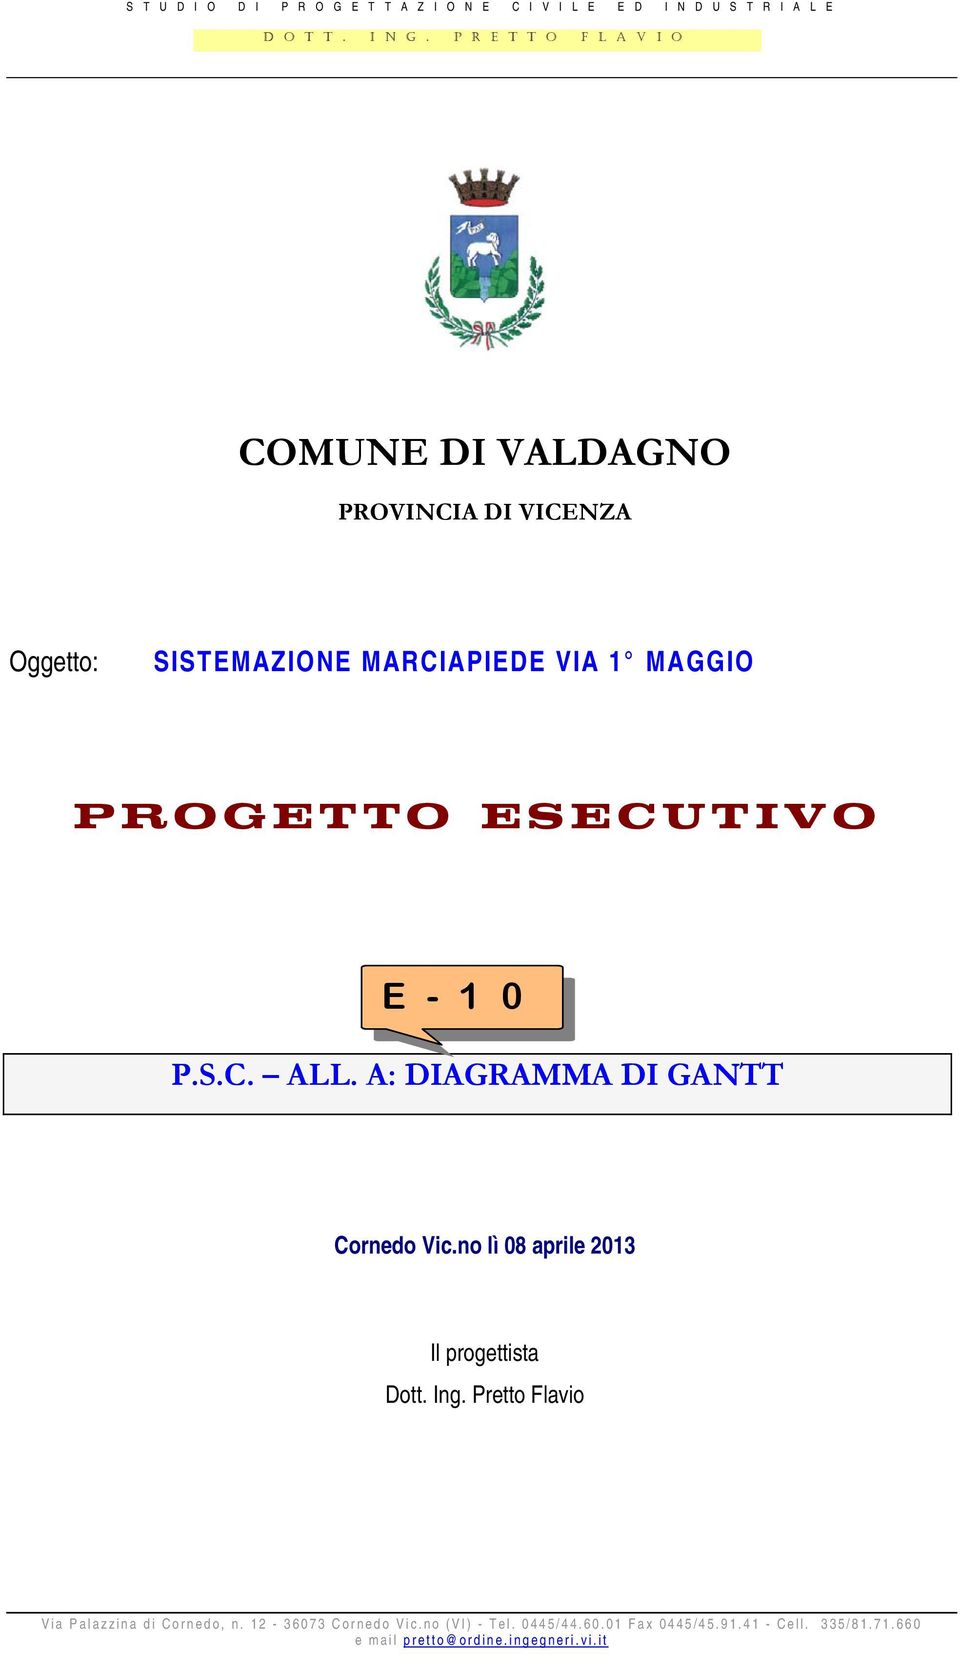 ESECUTIVO E - 1 0 P.S.C. ALL. A: DIAGRAMMA DI GANTT Cornedo Vic.no lì 08 aprile 2013 Il progettista Dott. Ing.